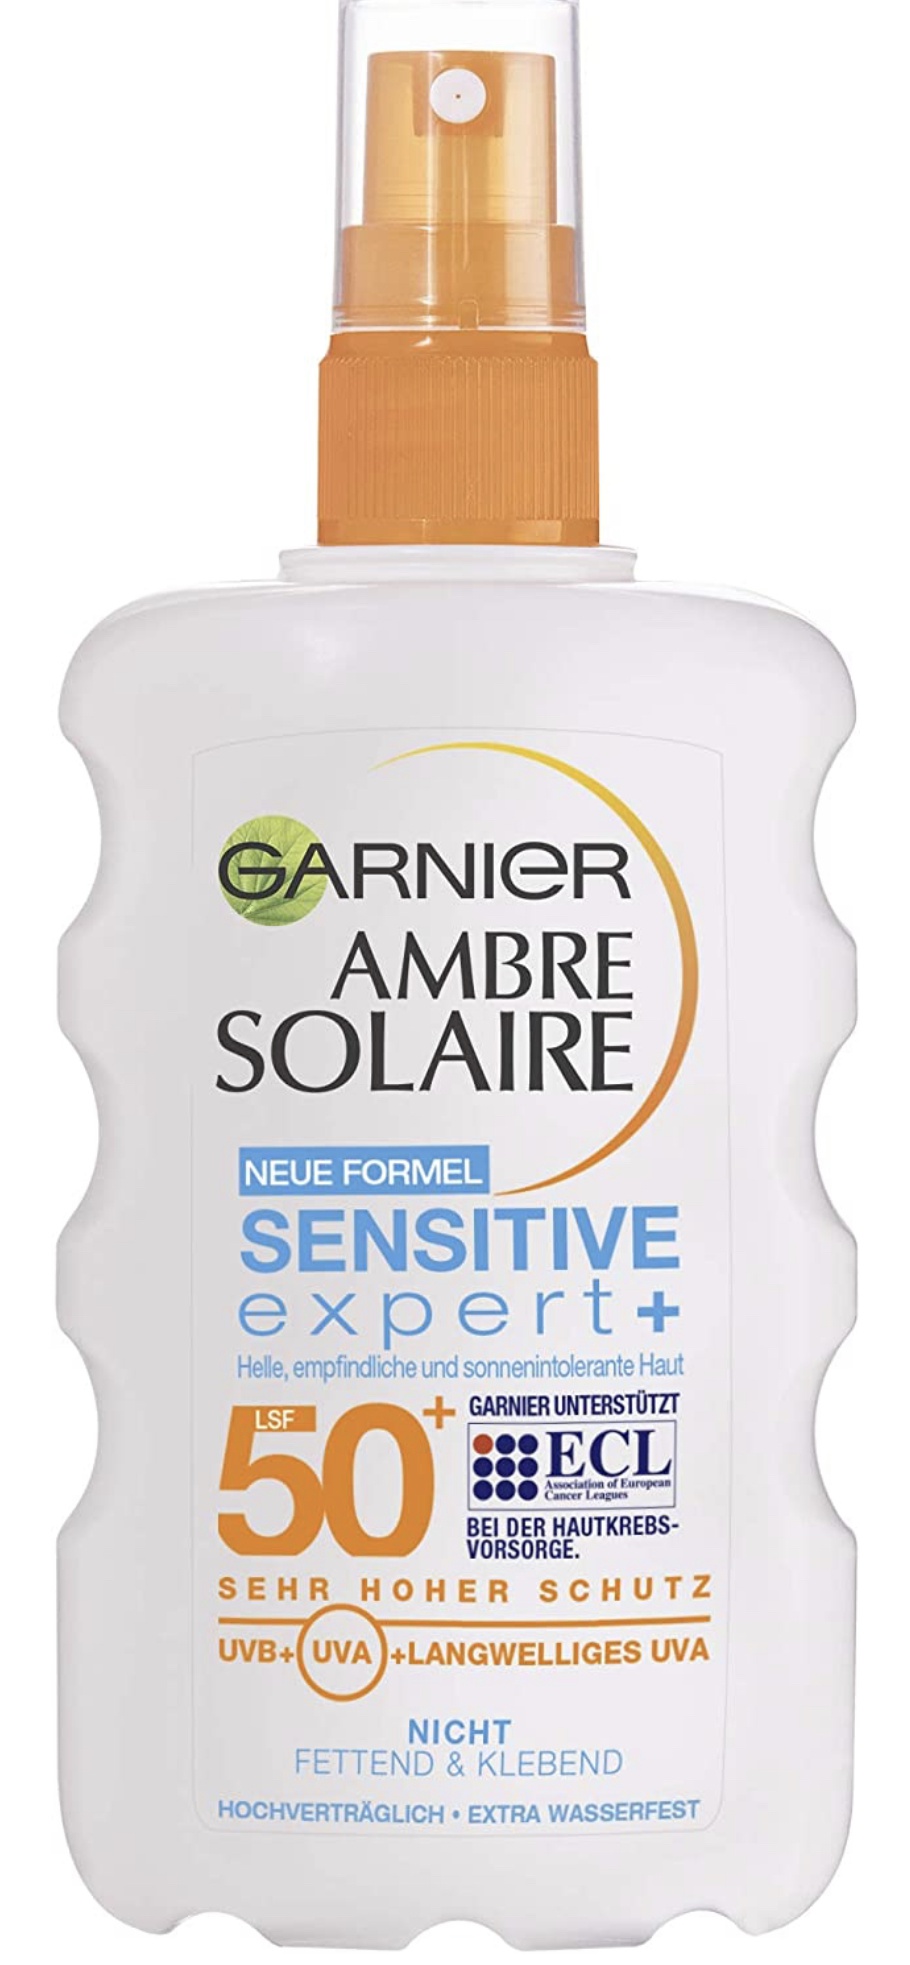 Garnier Ambre Solaire Sensitive Expert+ SPF50 Spray